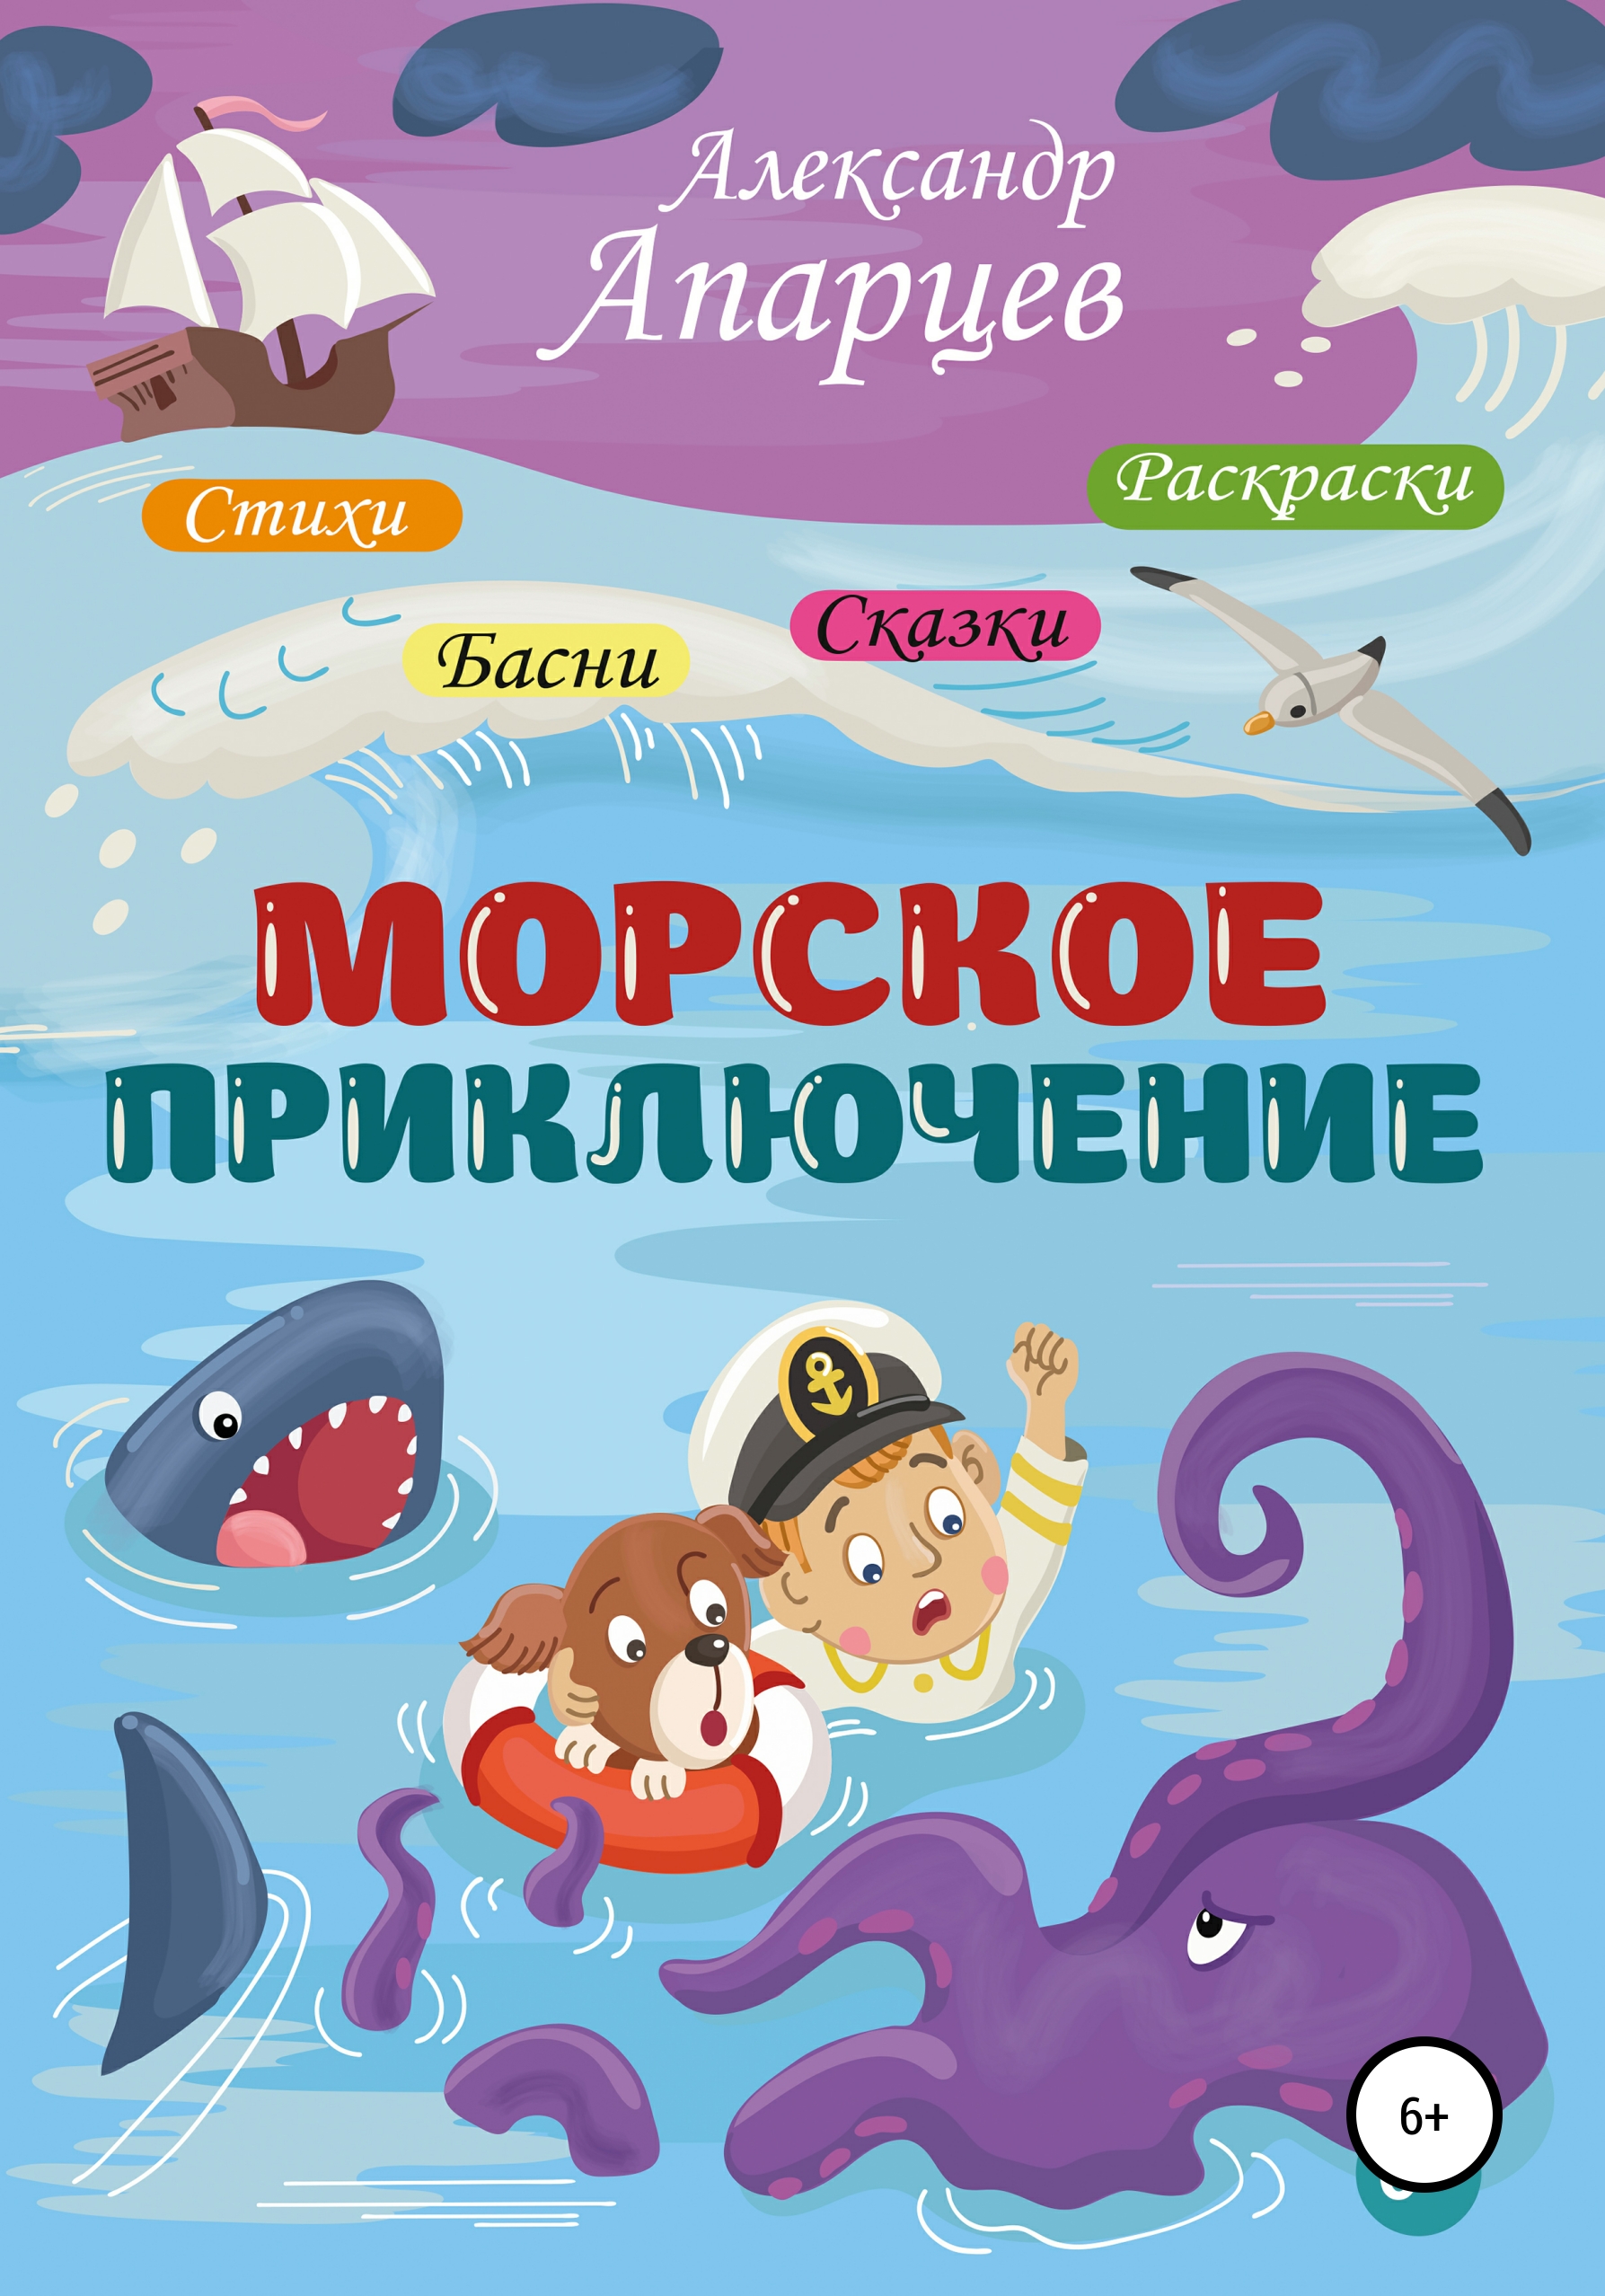 Книги про морские приключения для детей. Морское приключение. Морская литература для детей.